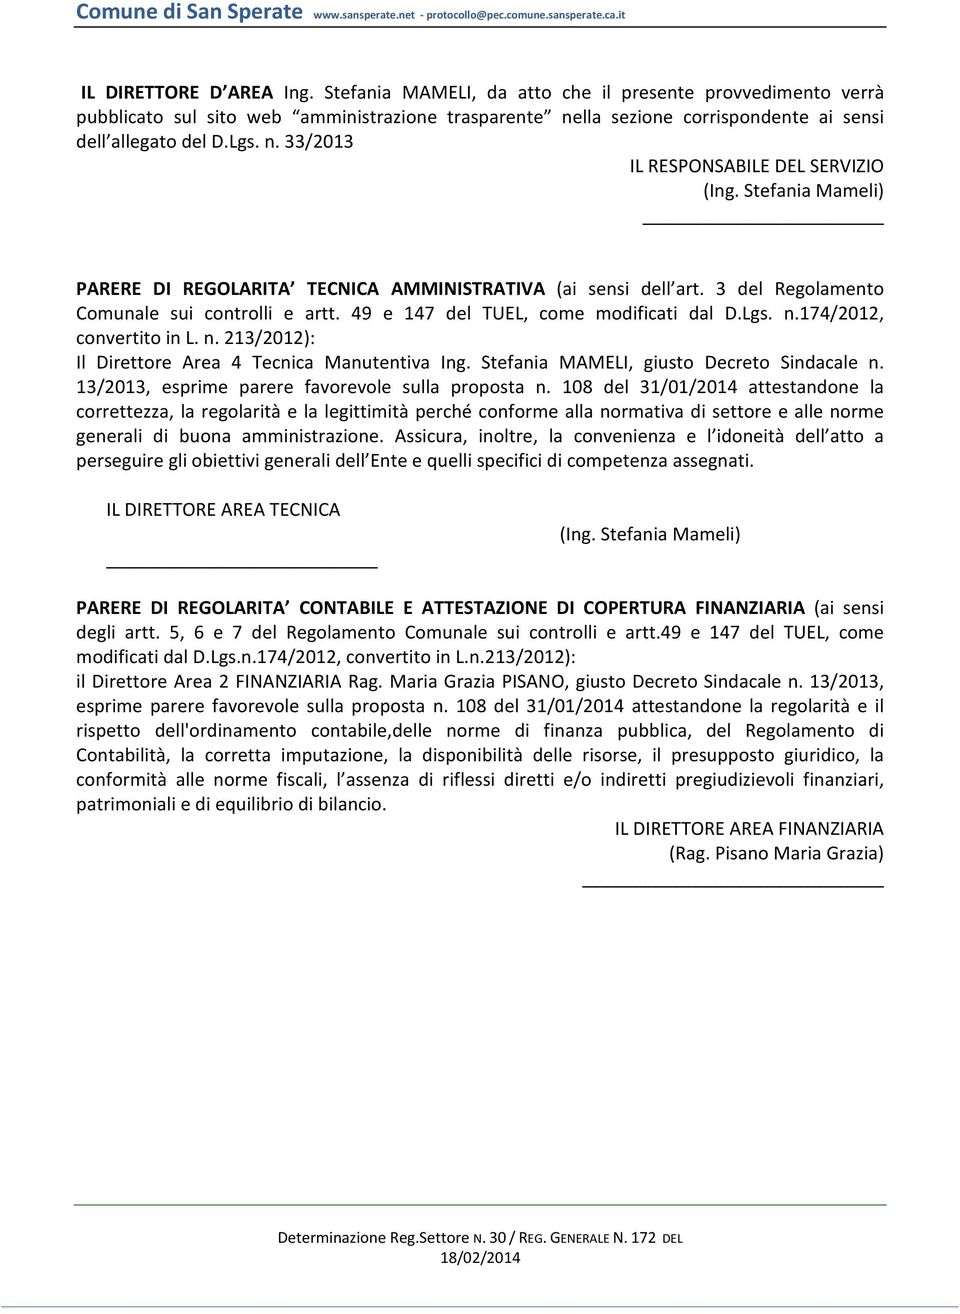 49 e 147 del TUEL, come modificati dal D.Lgs. n.174/2012, convertito in L. n. 213/2012): Il Direttore Area 4 Tecnica Manutentiva Ing. Stefania MAMELI, giusto Decreto Sindacale n.